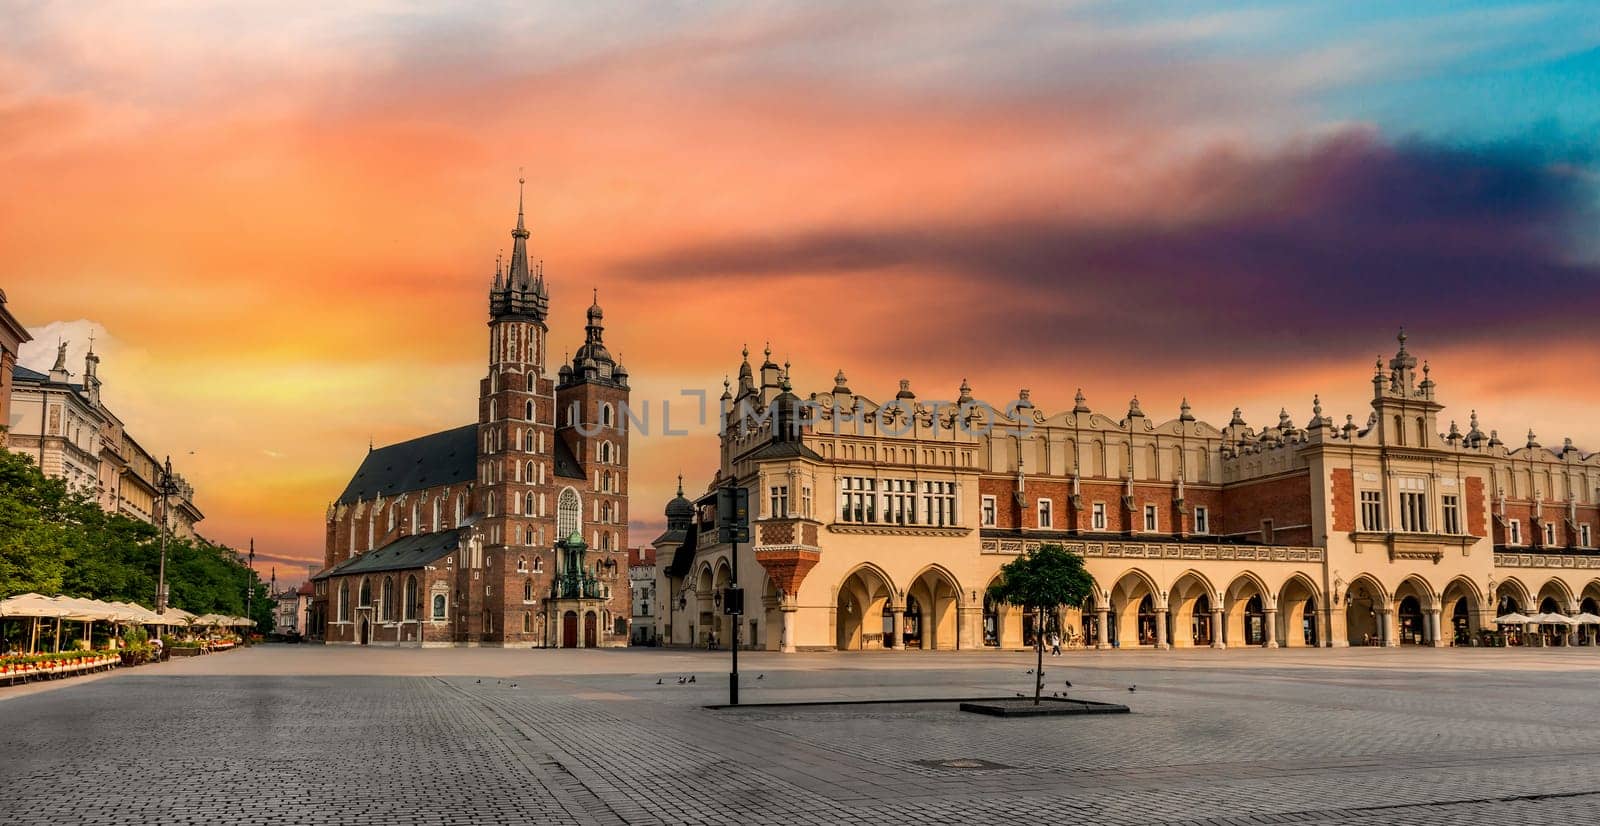 eastern european cobbled square in Krakow, Poland by tan4ikk1